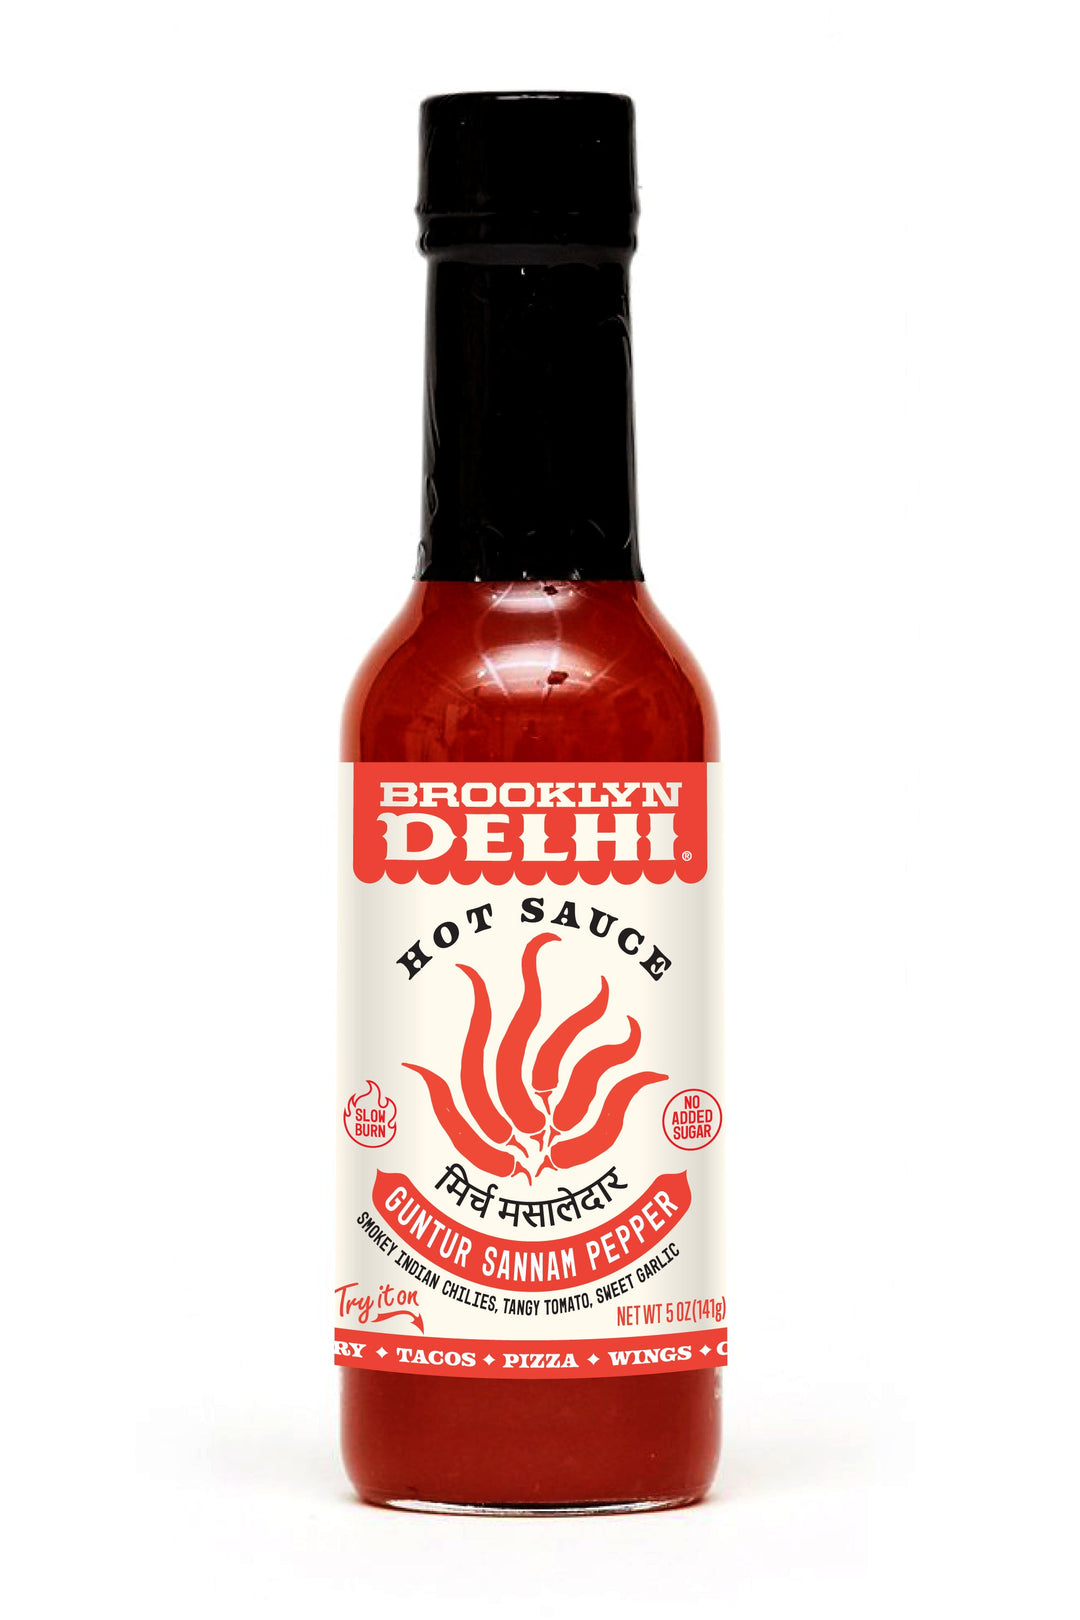 Brooklyn Delhi Guntar Sannam Hot Sauce